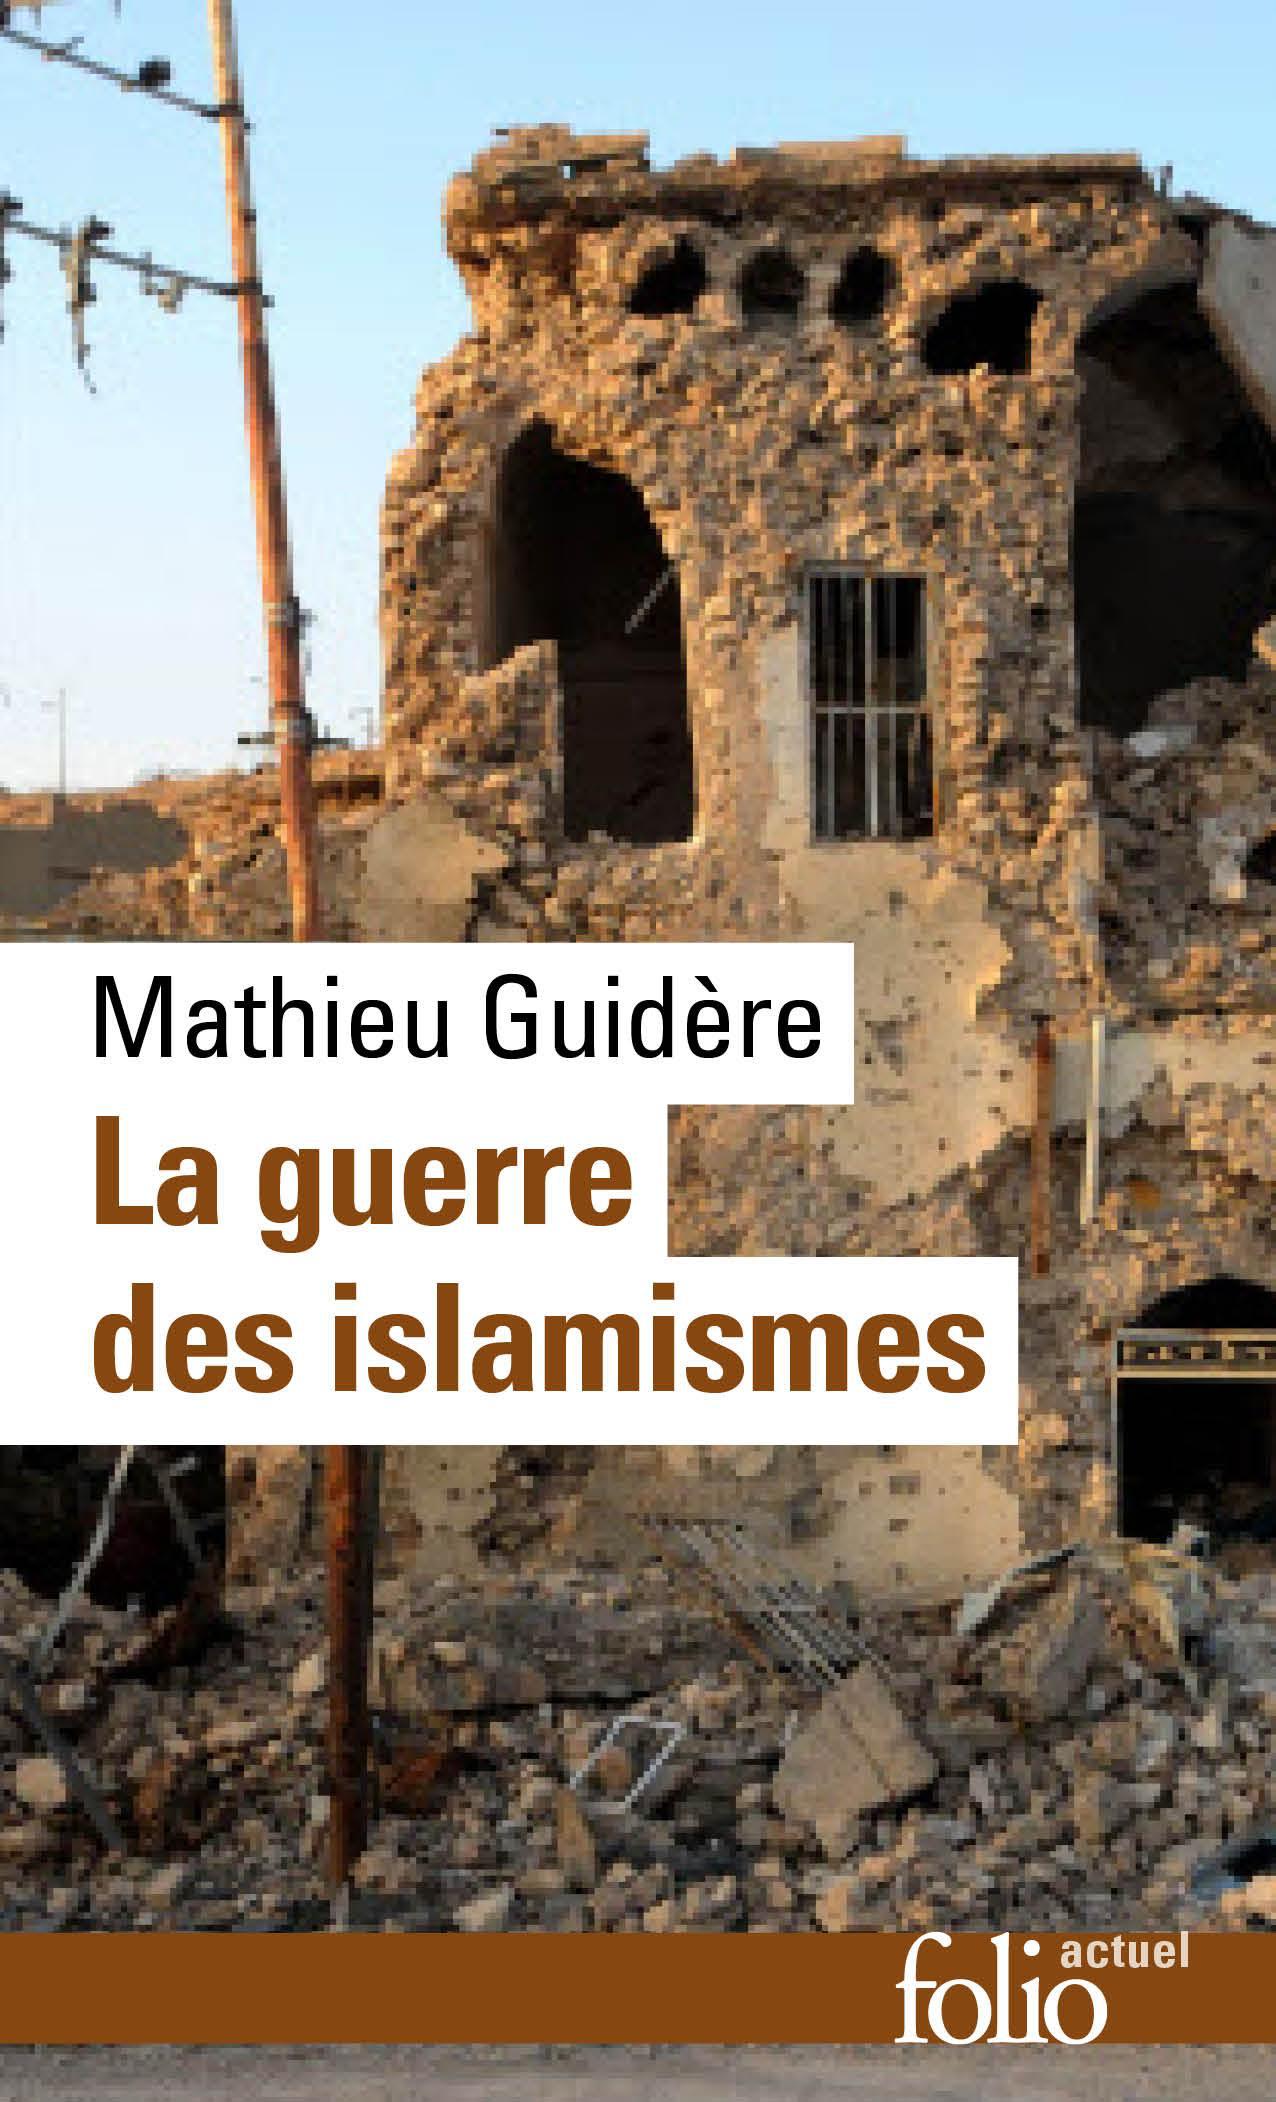 La guerre des islamismes Mathieu Guidère 2017